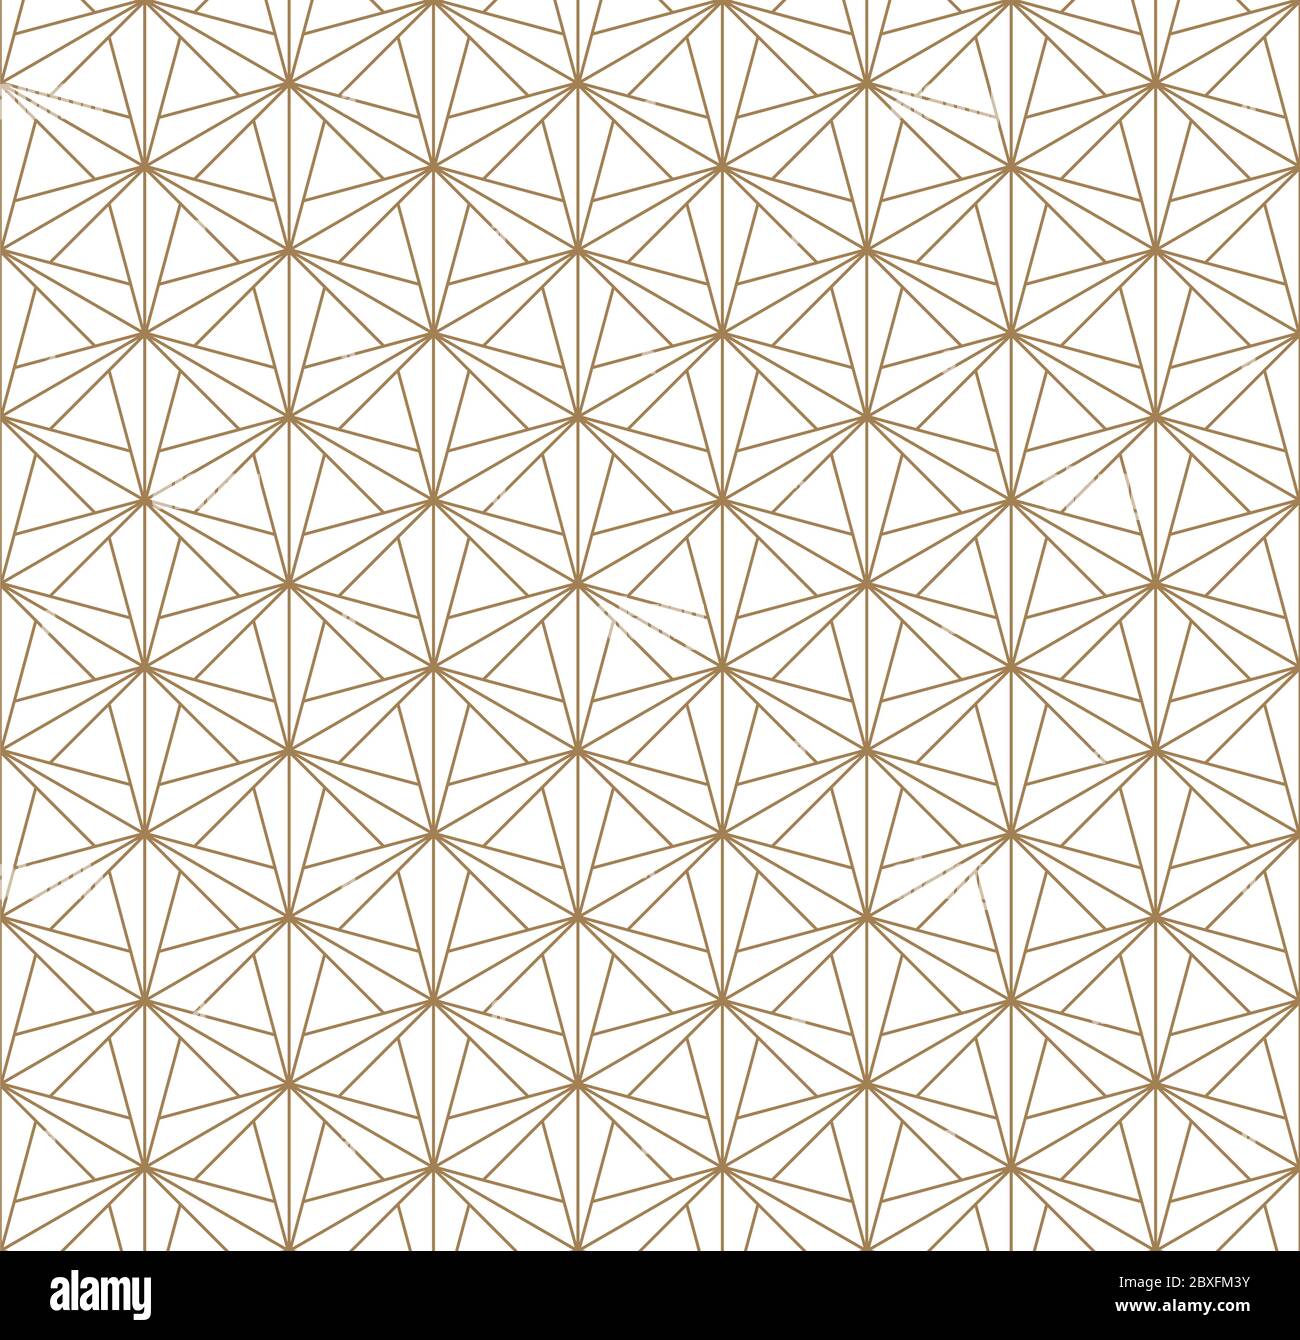 Un motif géométrique inspiré par Kumiko japonais.ornement pour tissu textile,modèle,,du papier d'emballage,Machines de découpe laser et gravure. Patte japonais Illustration de Vecteur